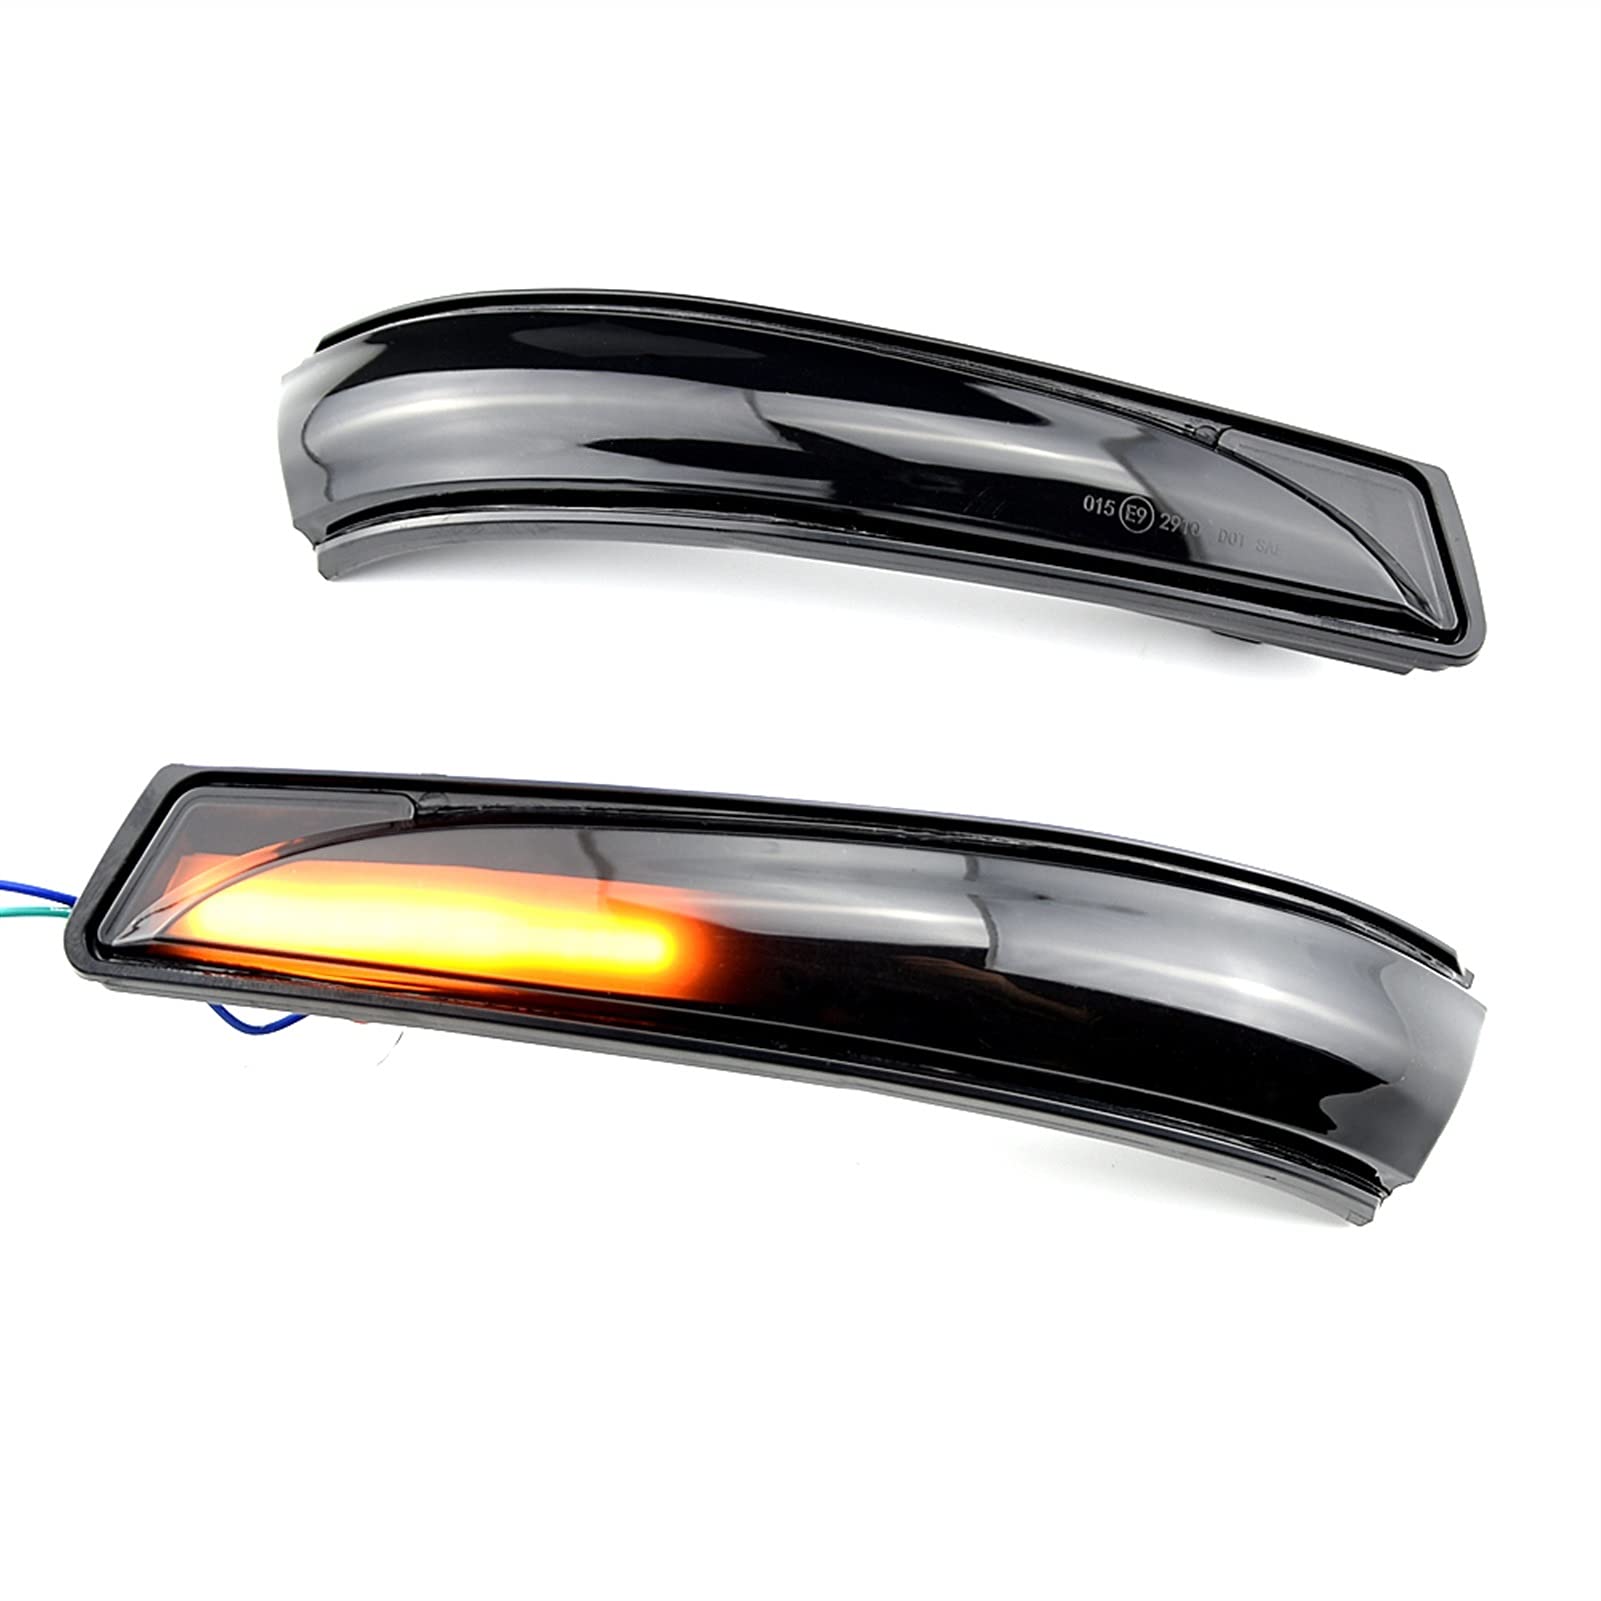 ZSXPBZL Spiegelblinker Dynamische,Dynamische Blinker Passend Für Hyundai Elantra MK5. Dynamische Seitenspiegelanzeige Blinker Sequential-Licht von ZSXPBZL